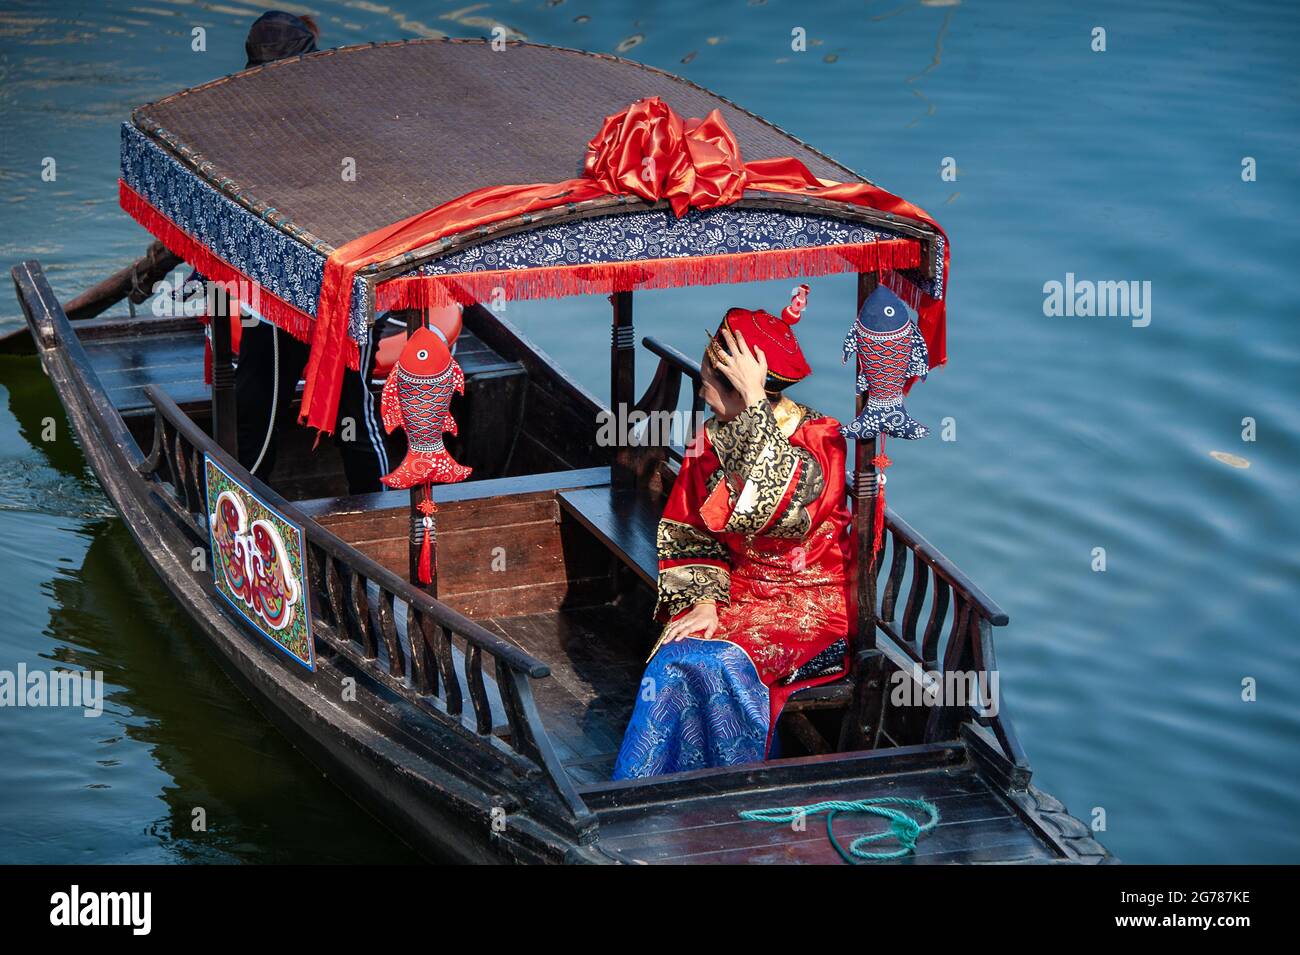 Wuxi, Cina - Ottobre 2019: Donna vestita in tradizionale costume da matrimonio cinese su una chiatta decorata sul fiume, su sfondo blu. Foto Stock